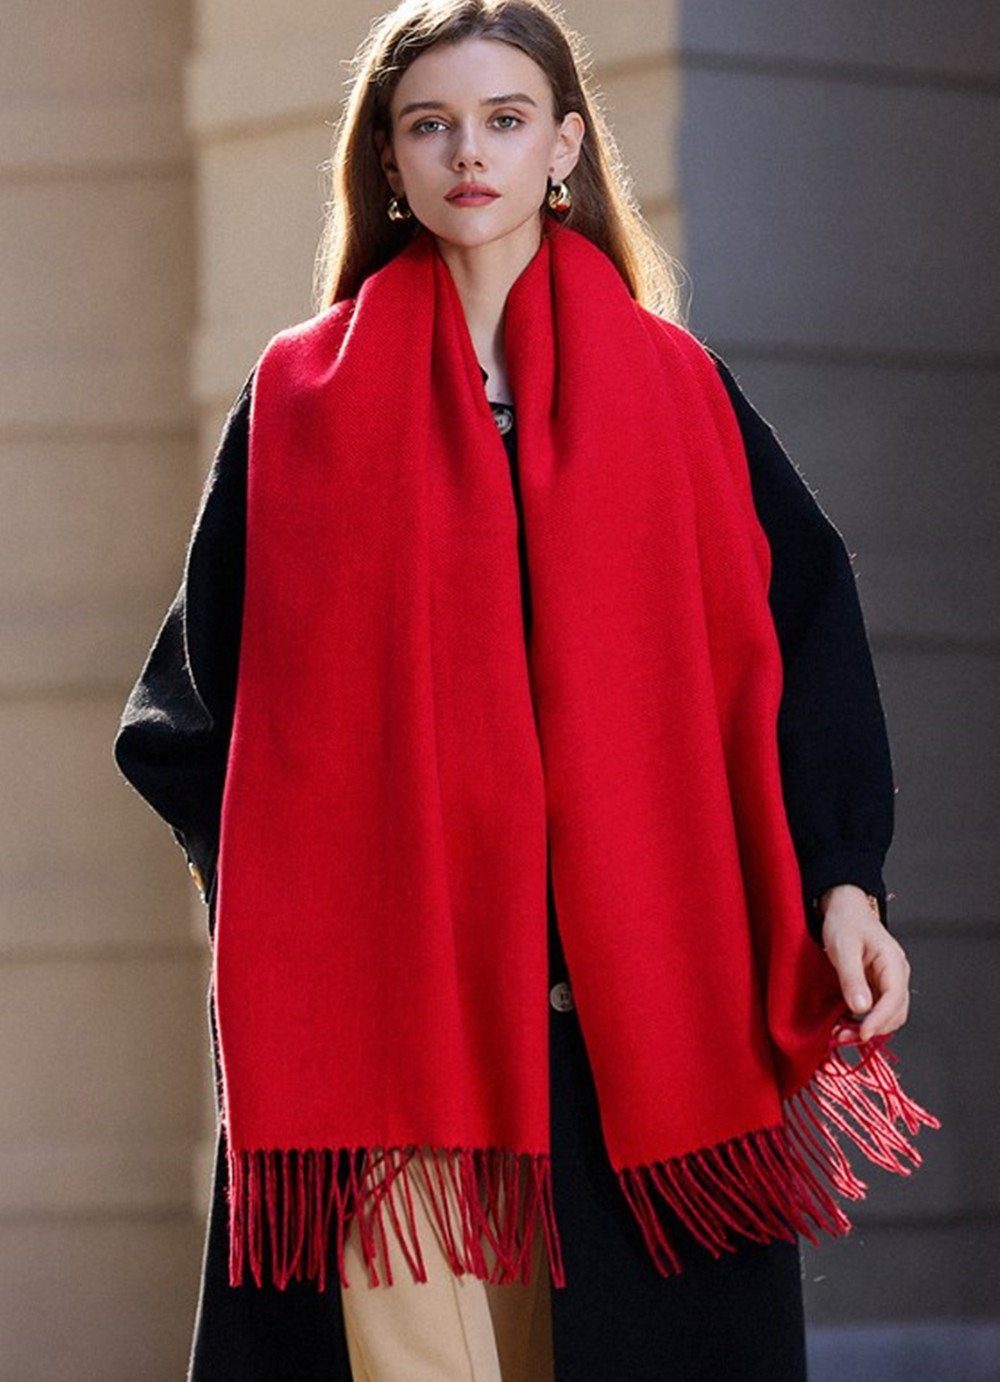 XDeer Modeschal Damen Frauen in Stil, red verschiedenen Farben Poncho Qualität,Neuer Schal für Halstuch Geschenk Damen Schal,kuschelweich,Winter